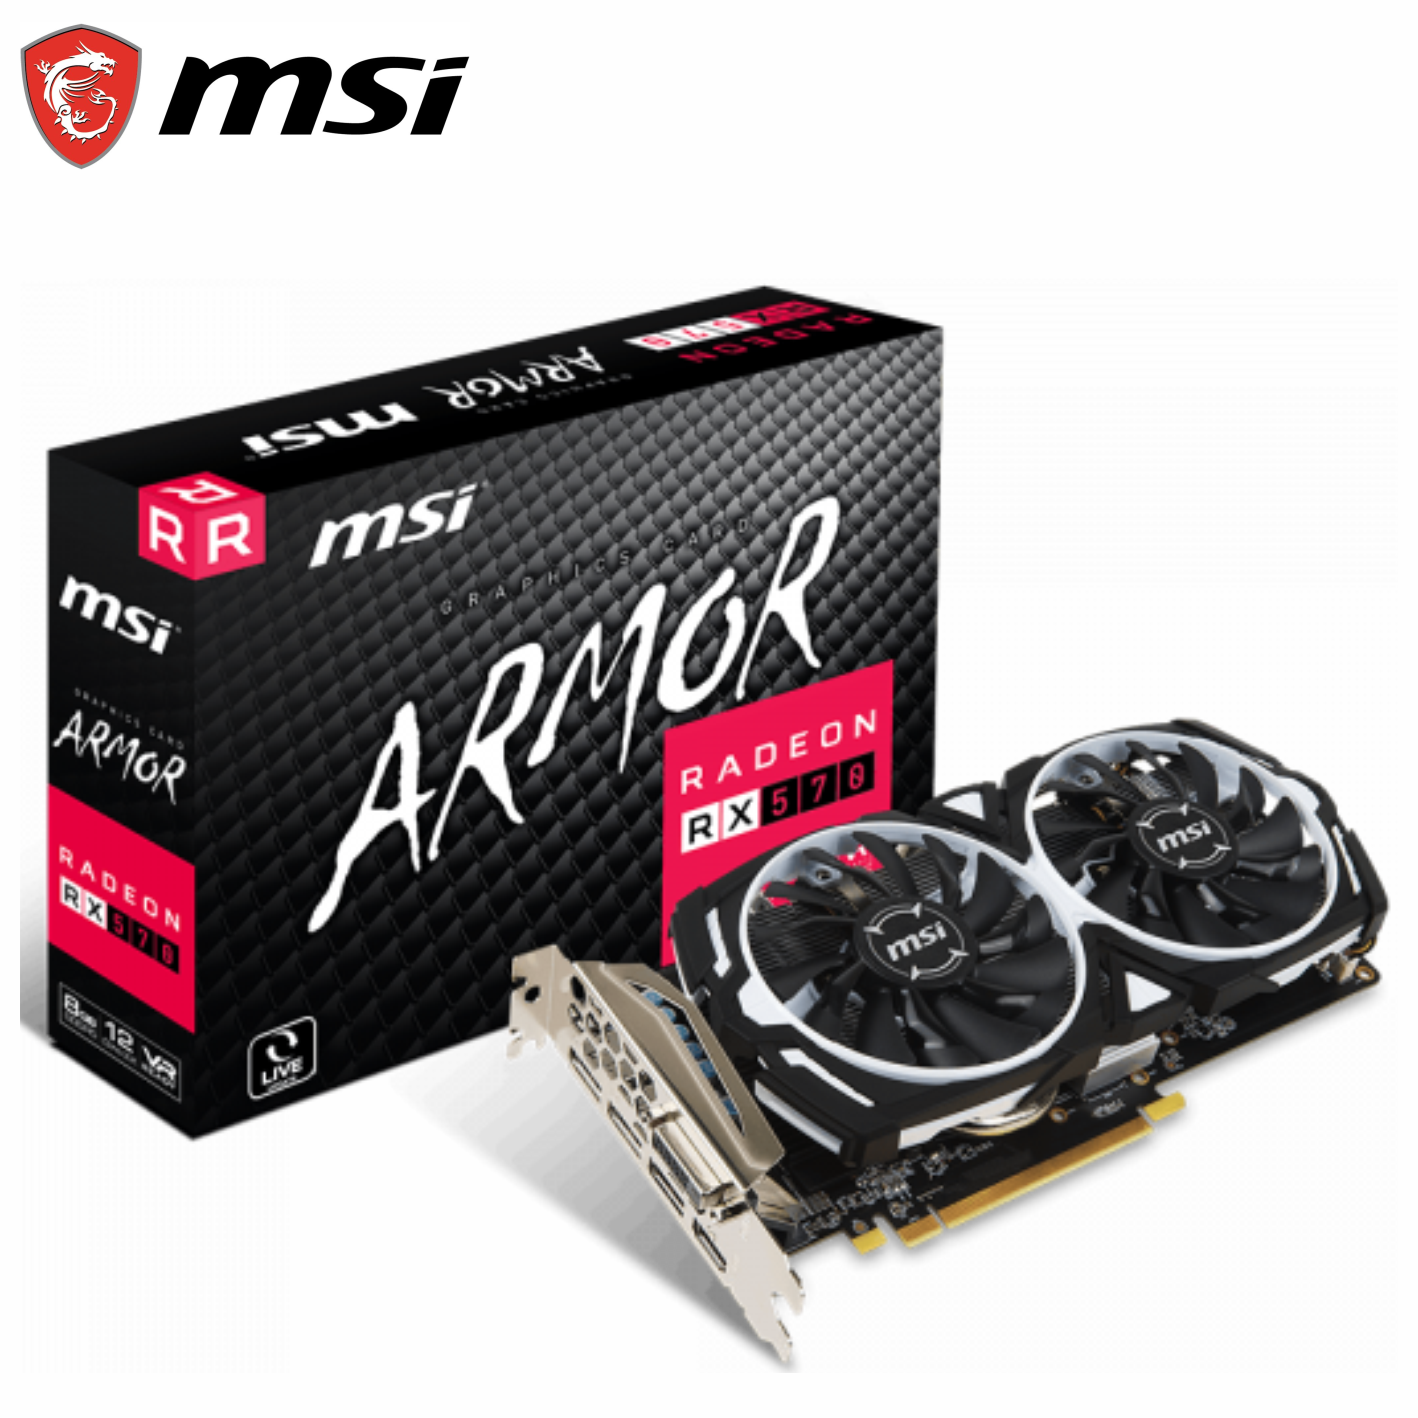 Tarjeta de video MSI AMD Radeon RX 570 Armor, 8GB GDDR5 256-bit, PCI-E x16